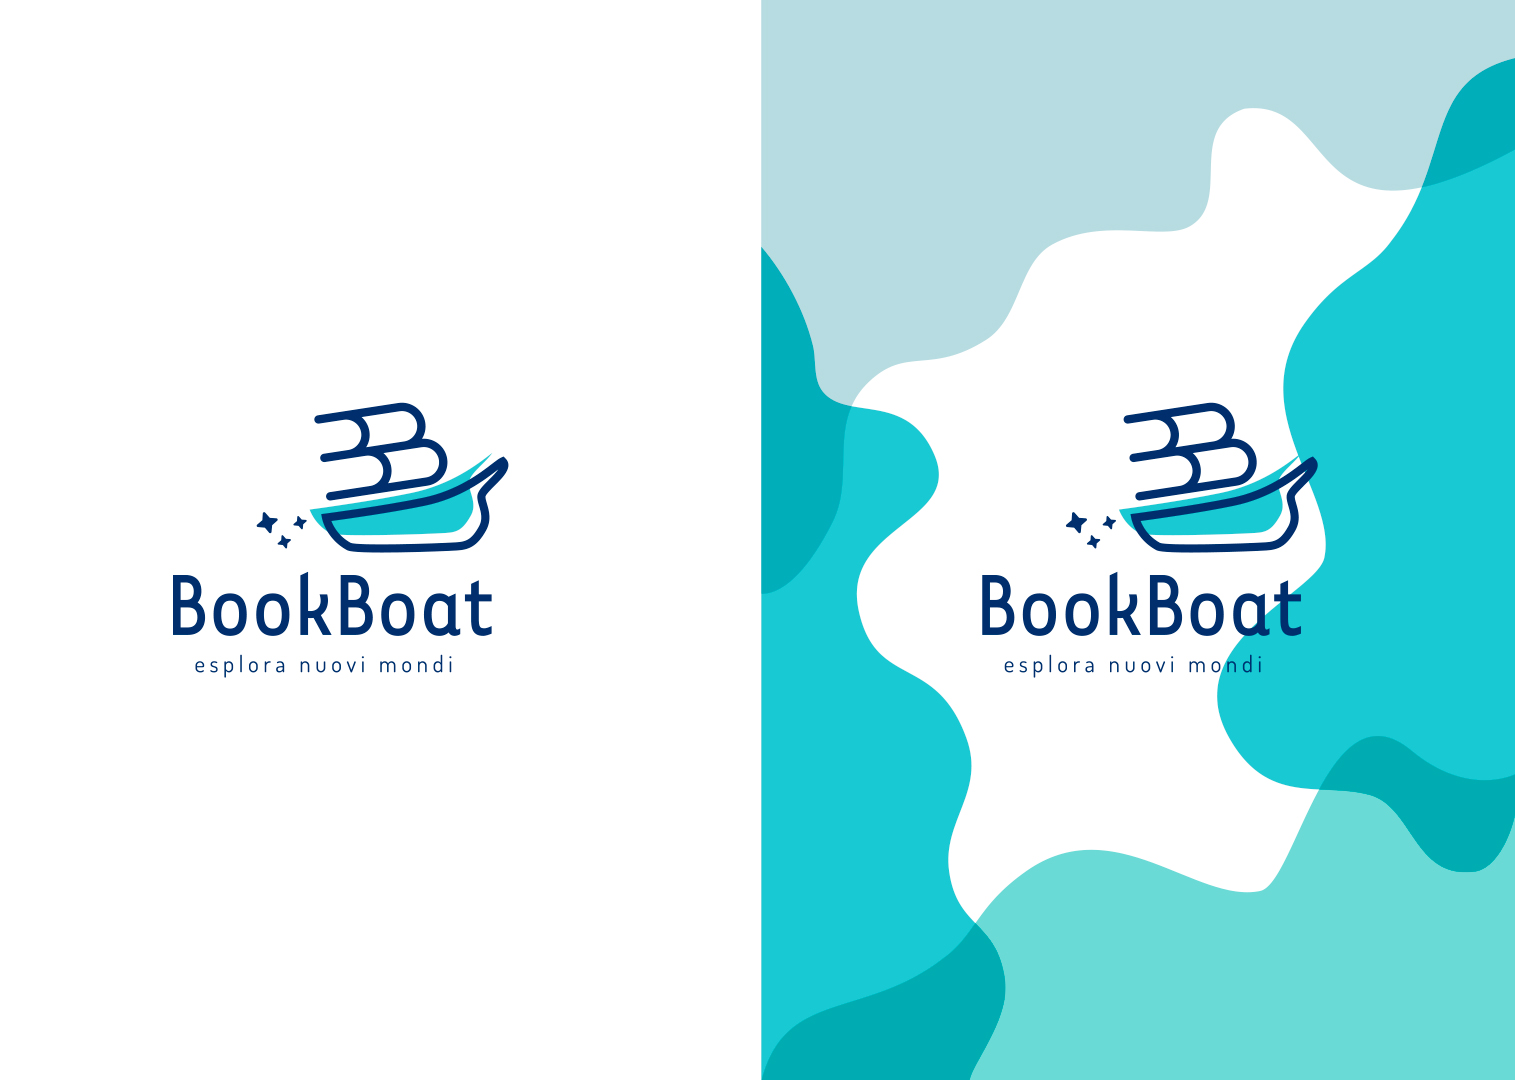 Bookboat – Esplora nuovi mondi